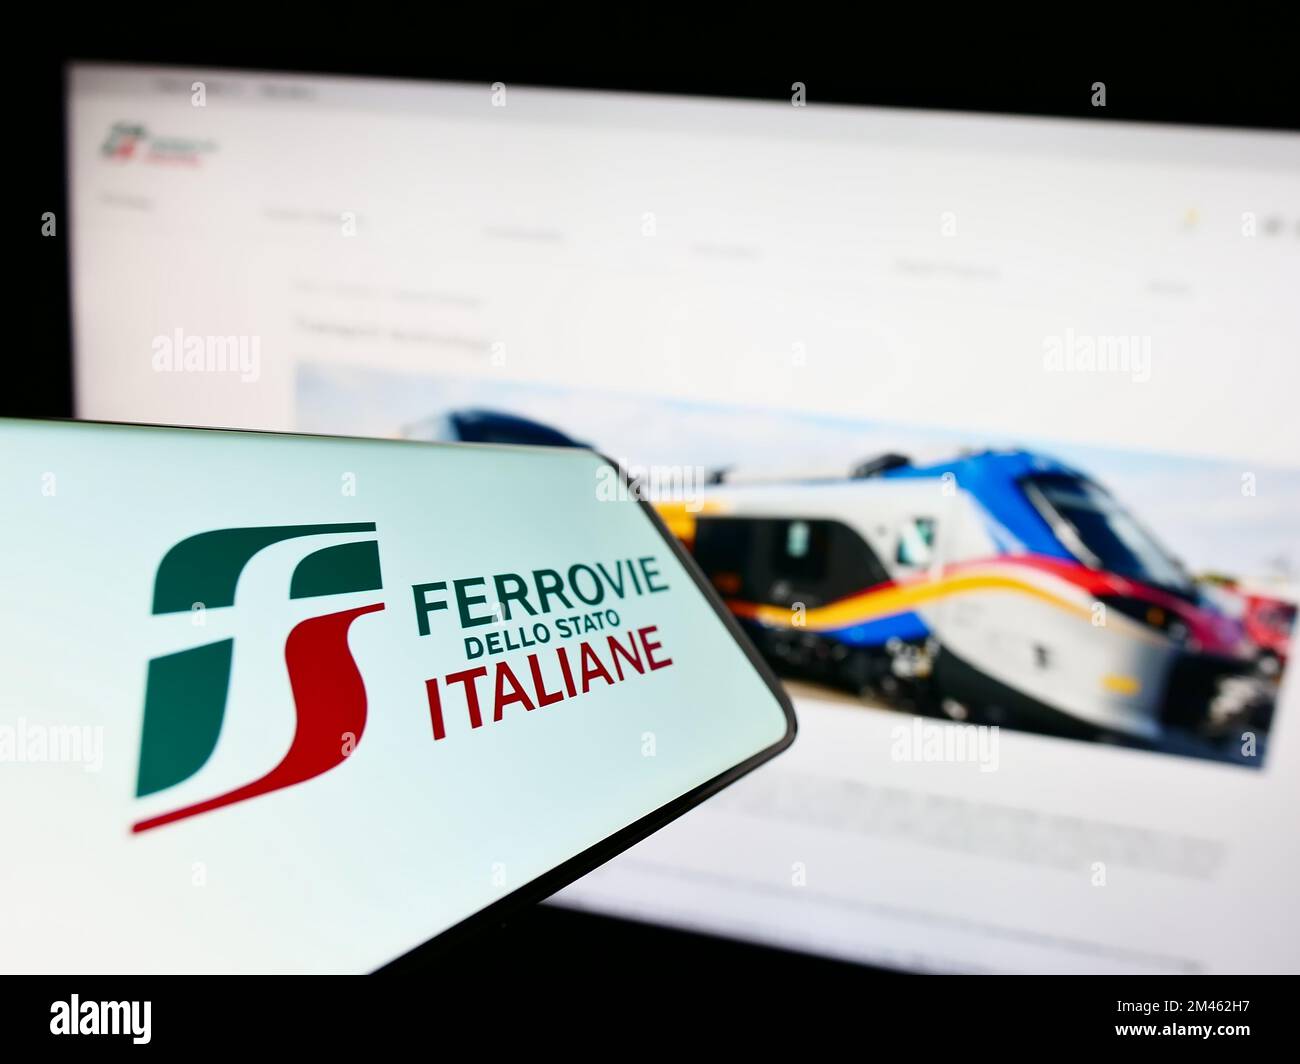 Smartphone avec logo de la compagnie ferroviaire Ferrovie dello Stato Italiane S.p.A. sur écran devant le site. Effectuez la mise au point au centre-droit de l'écran du téléphone. Banque D'Images